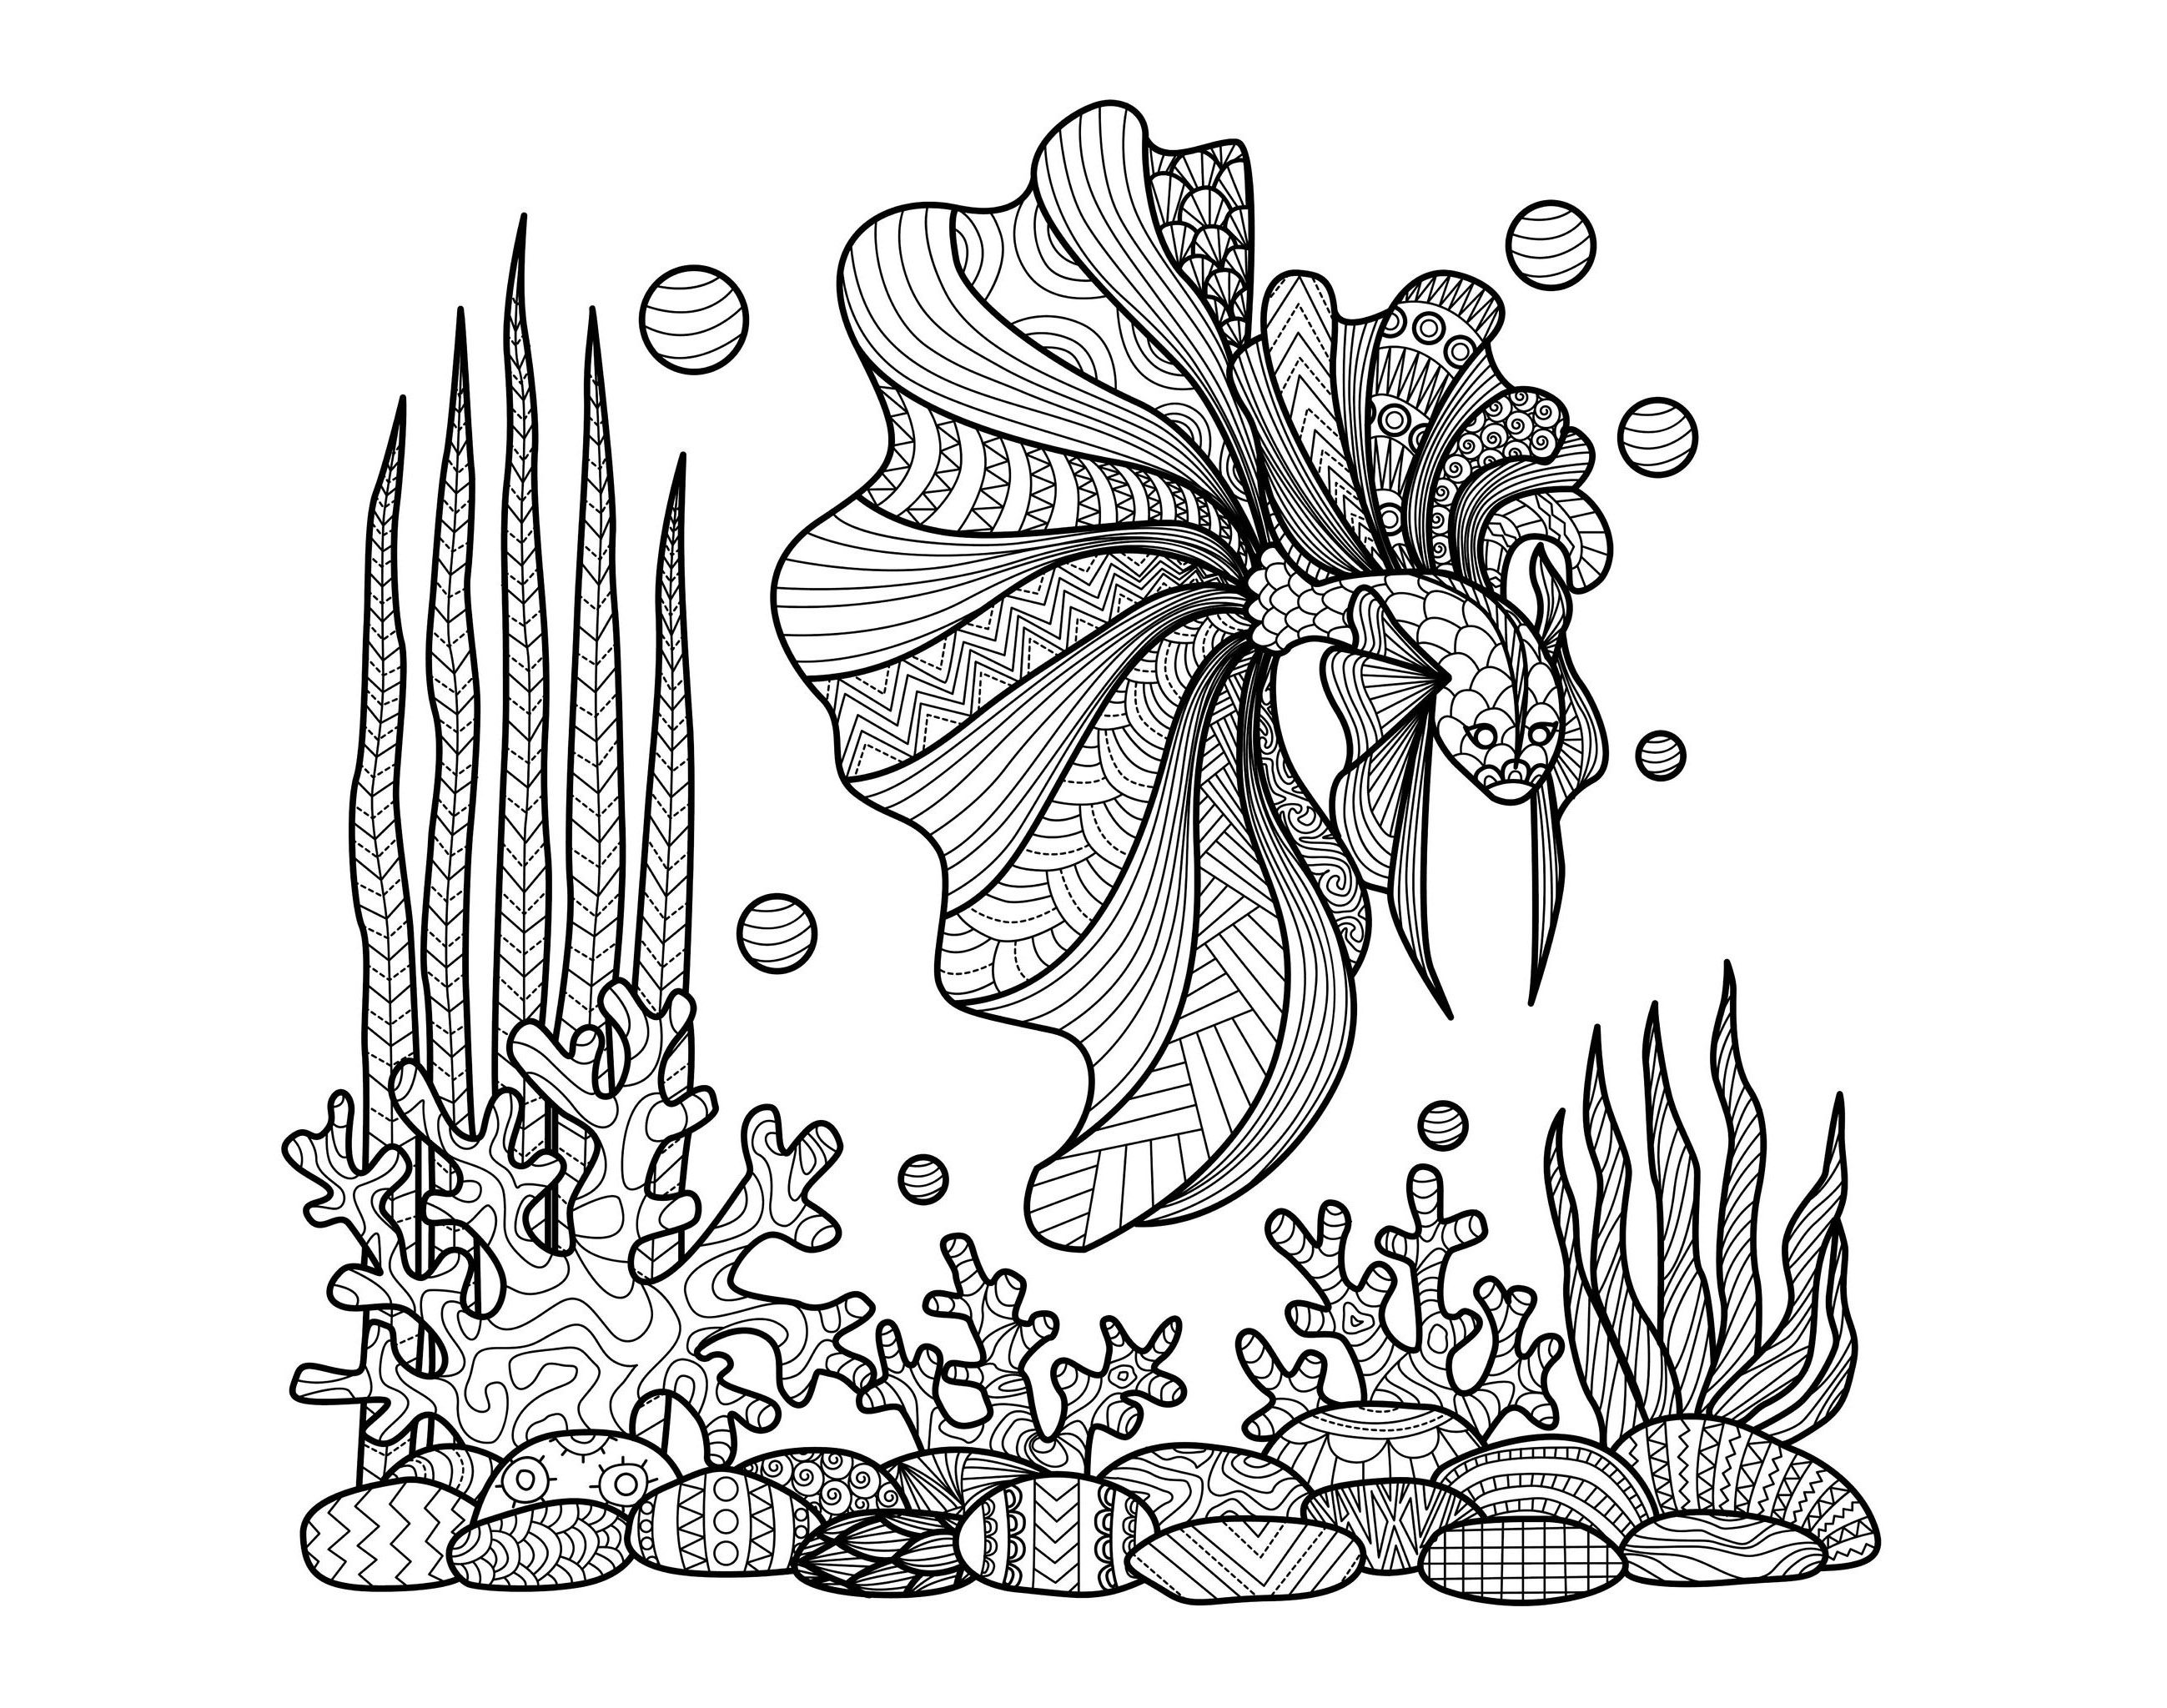 Magnifique dessin Zentangle, à colorier, par Bimdeedee (source : 123rf)